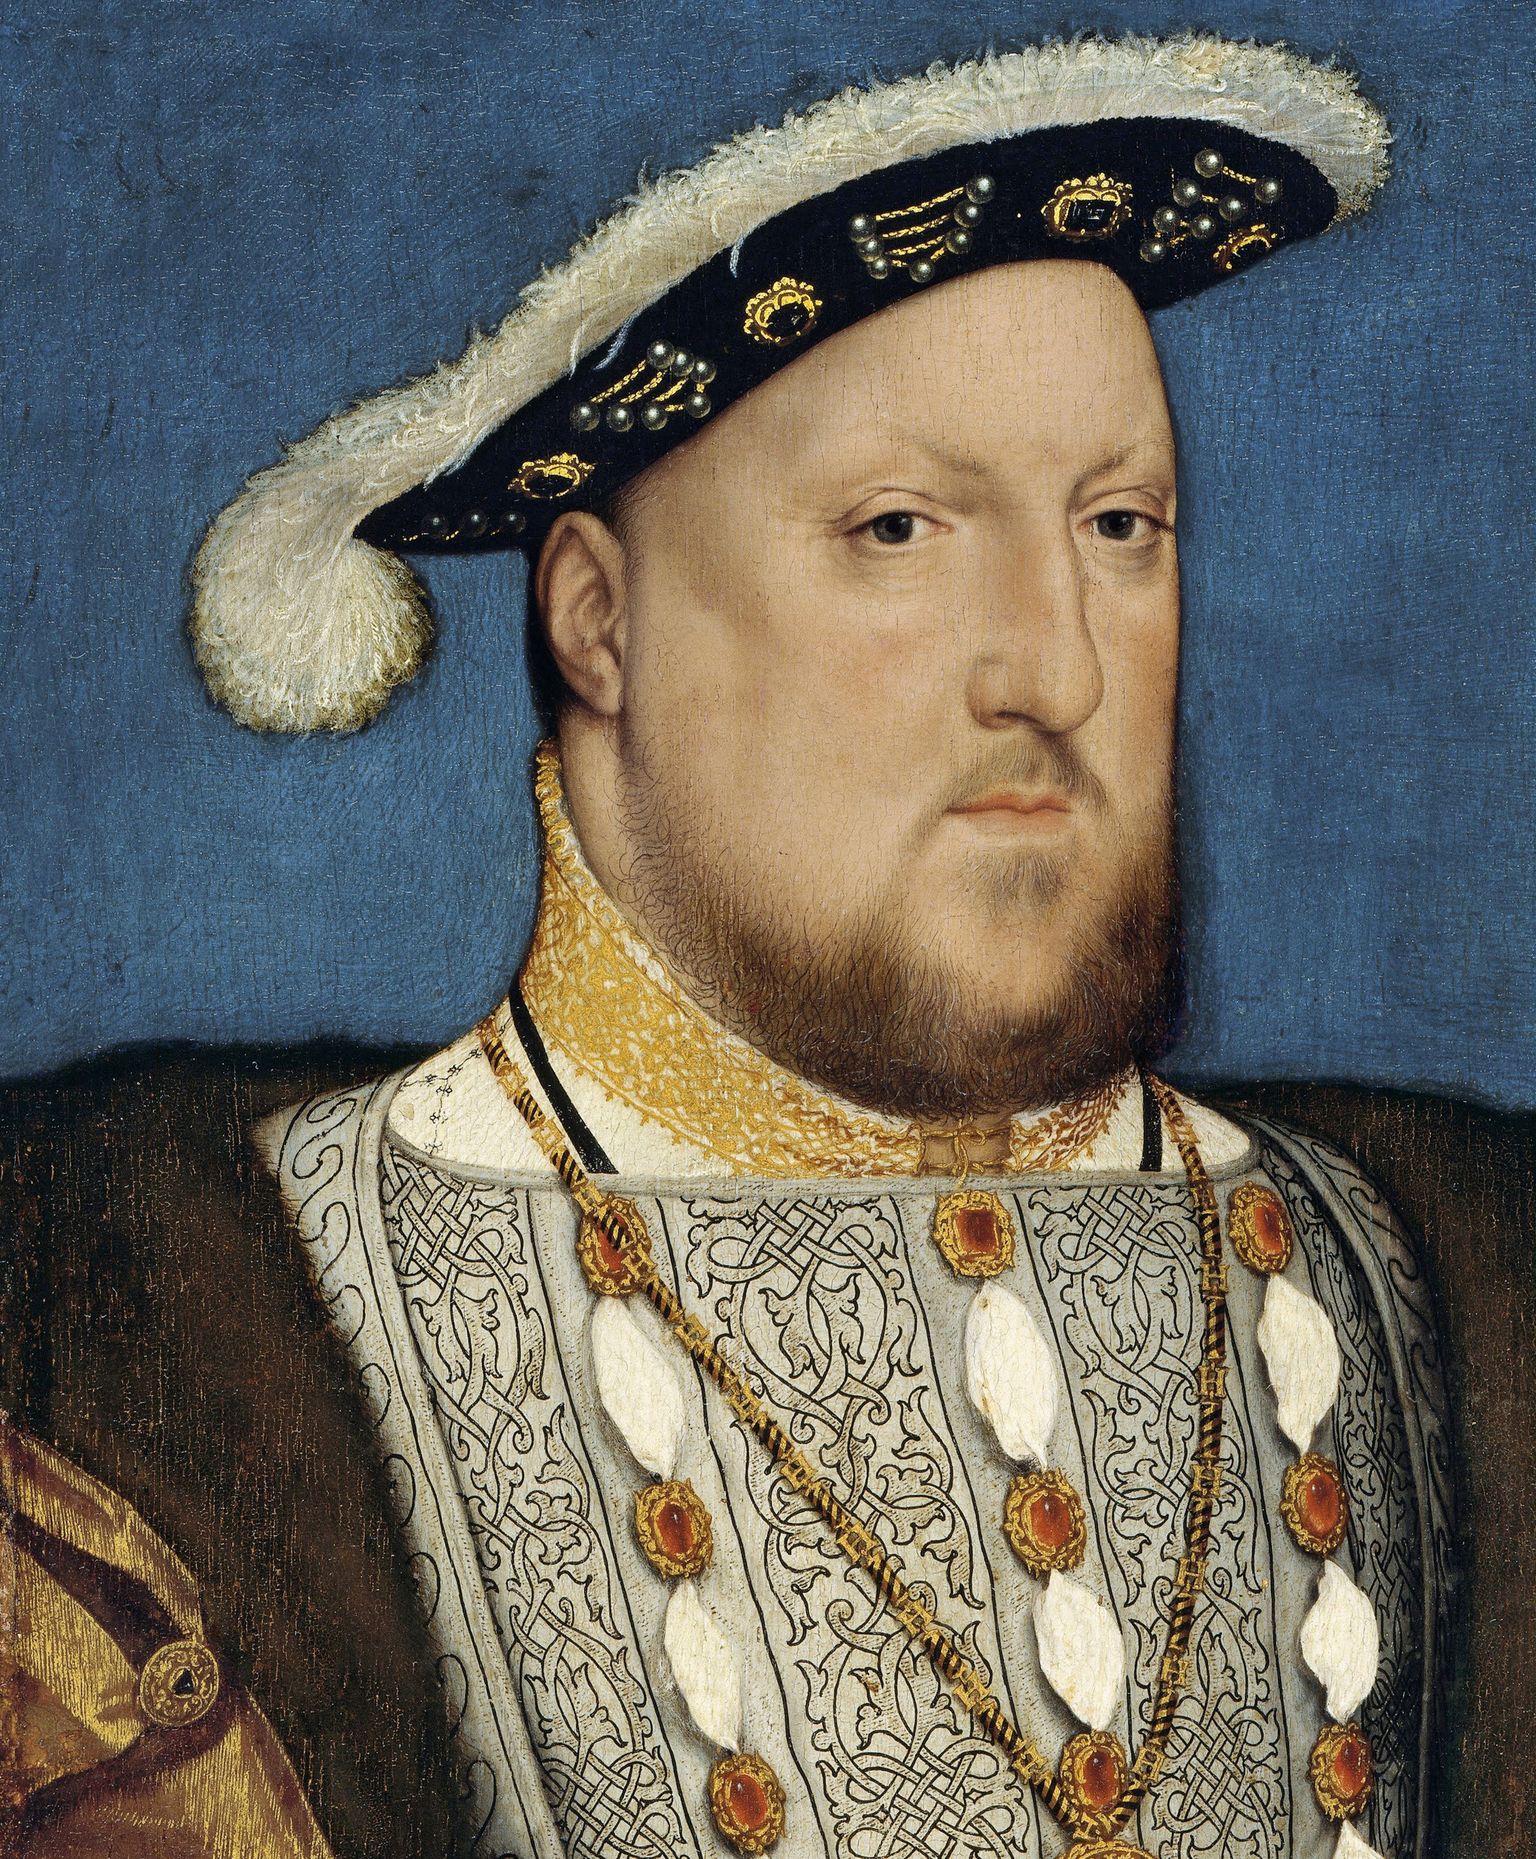 Inglise kuningas Henry VIII (1491 - 1547), kes valitses 1509 - 1547